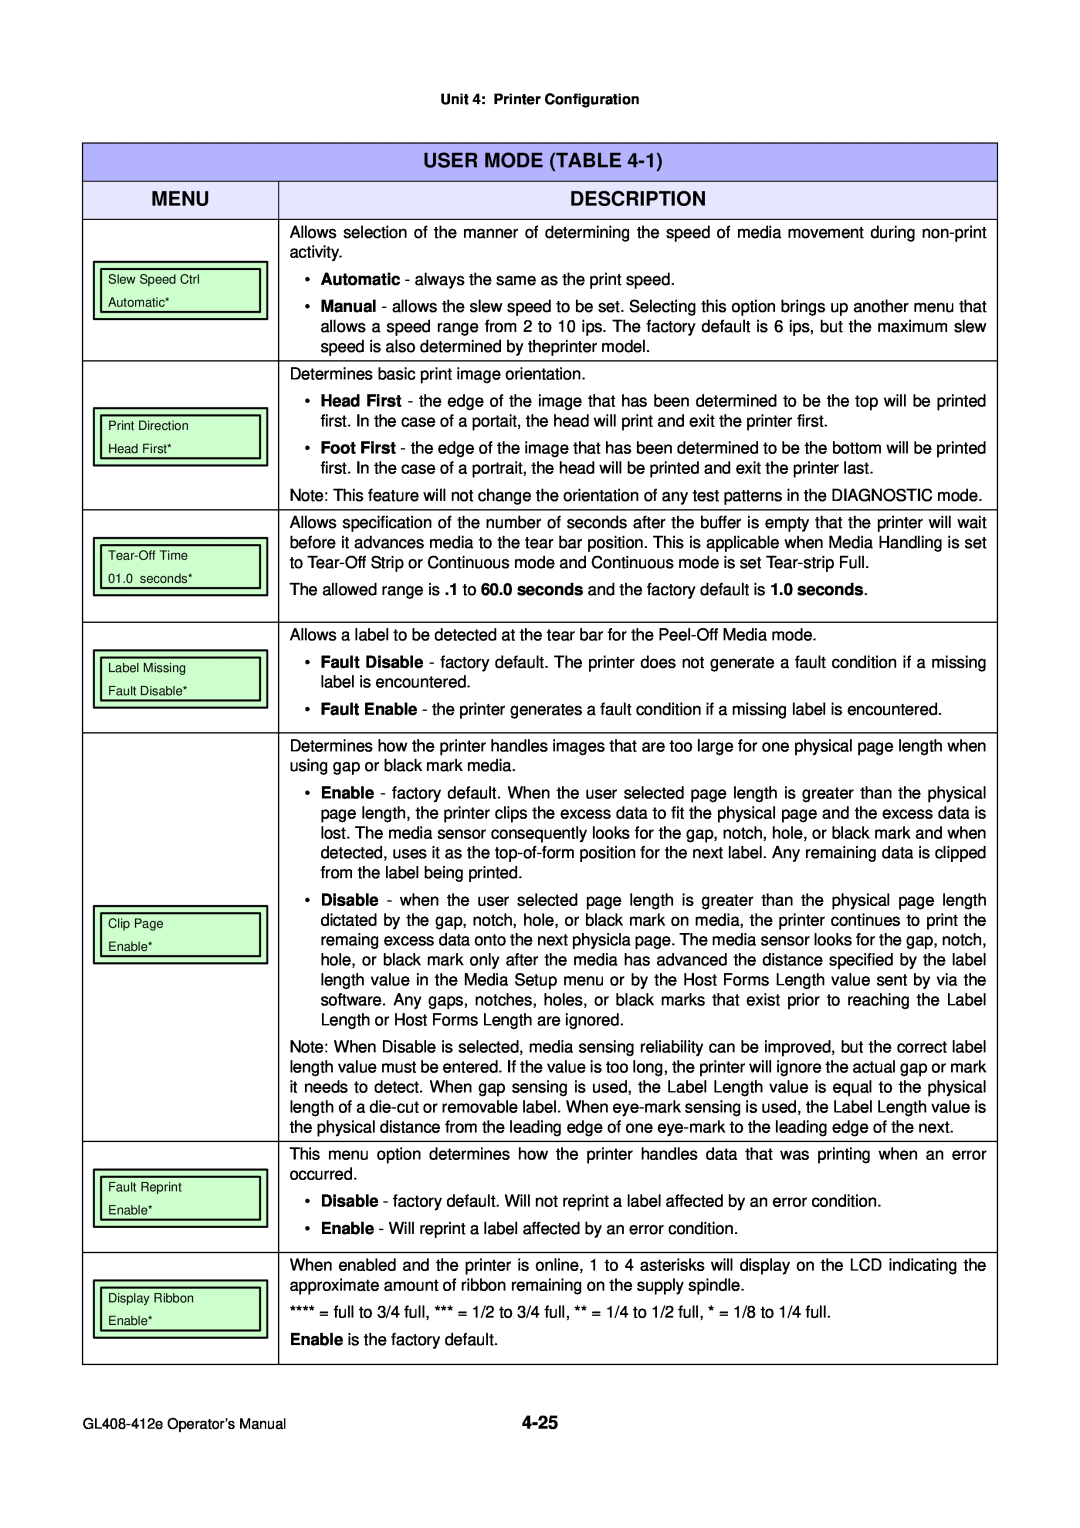 SATO GL4XXE manual User Mode Table, Menu, Description, activity 